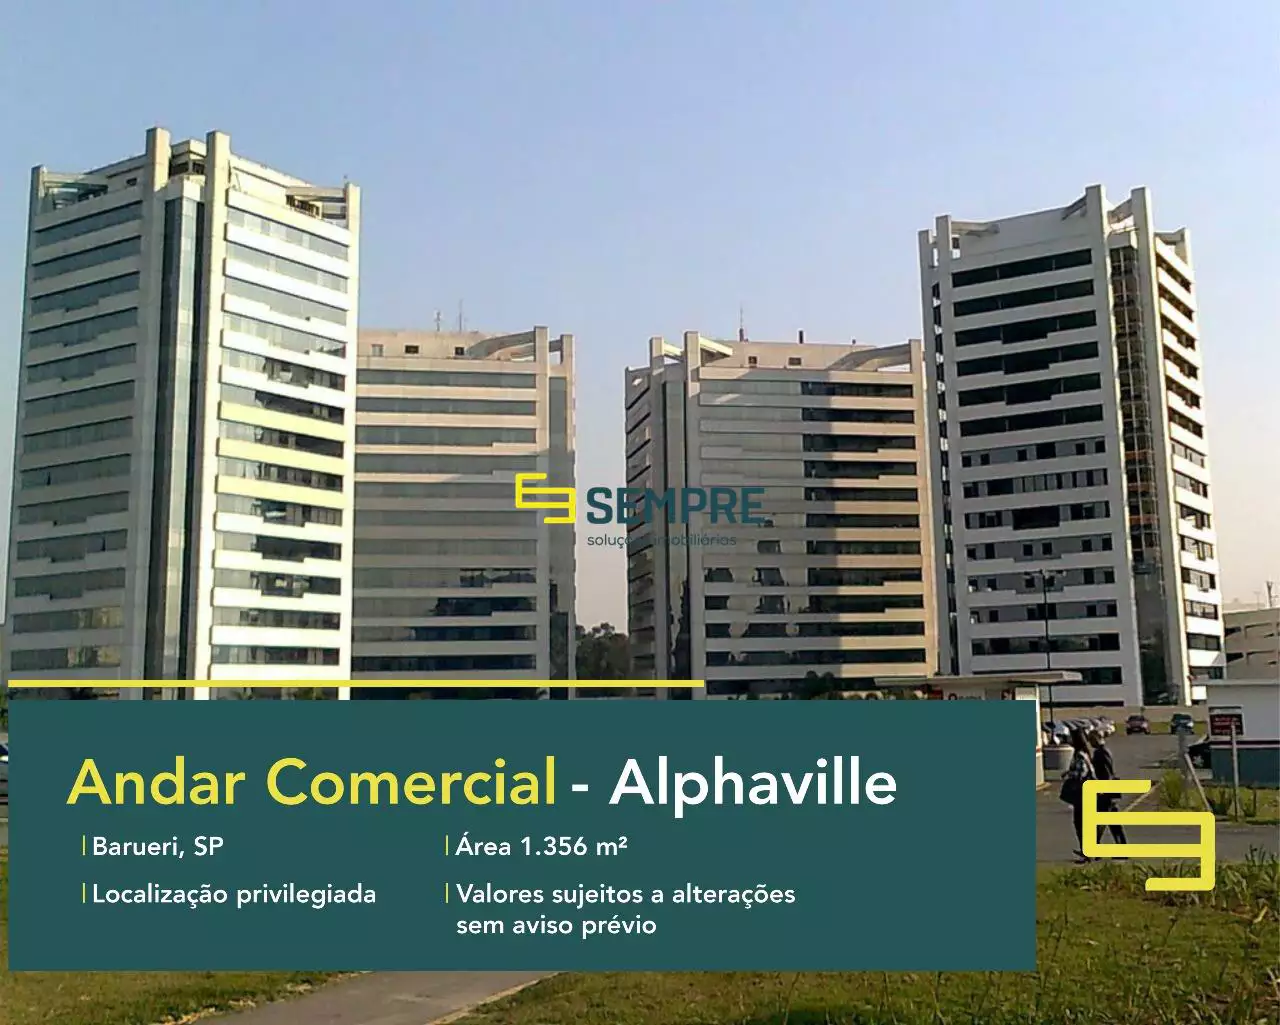 Laje corporativa em São Paulo para locação - C.A. Rio Negro, excelente localização. O estabelecimento comercial conta com área de 678 m².